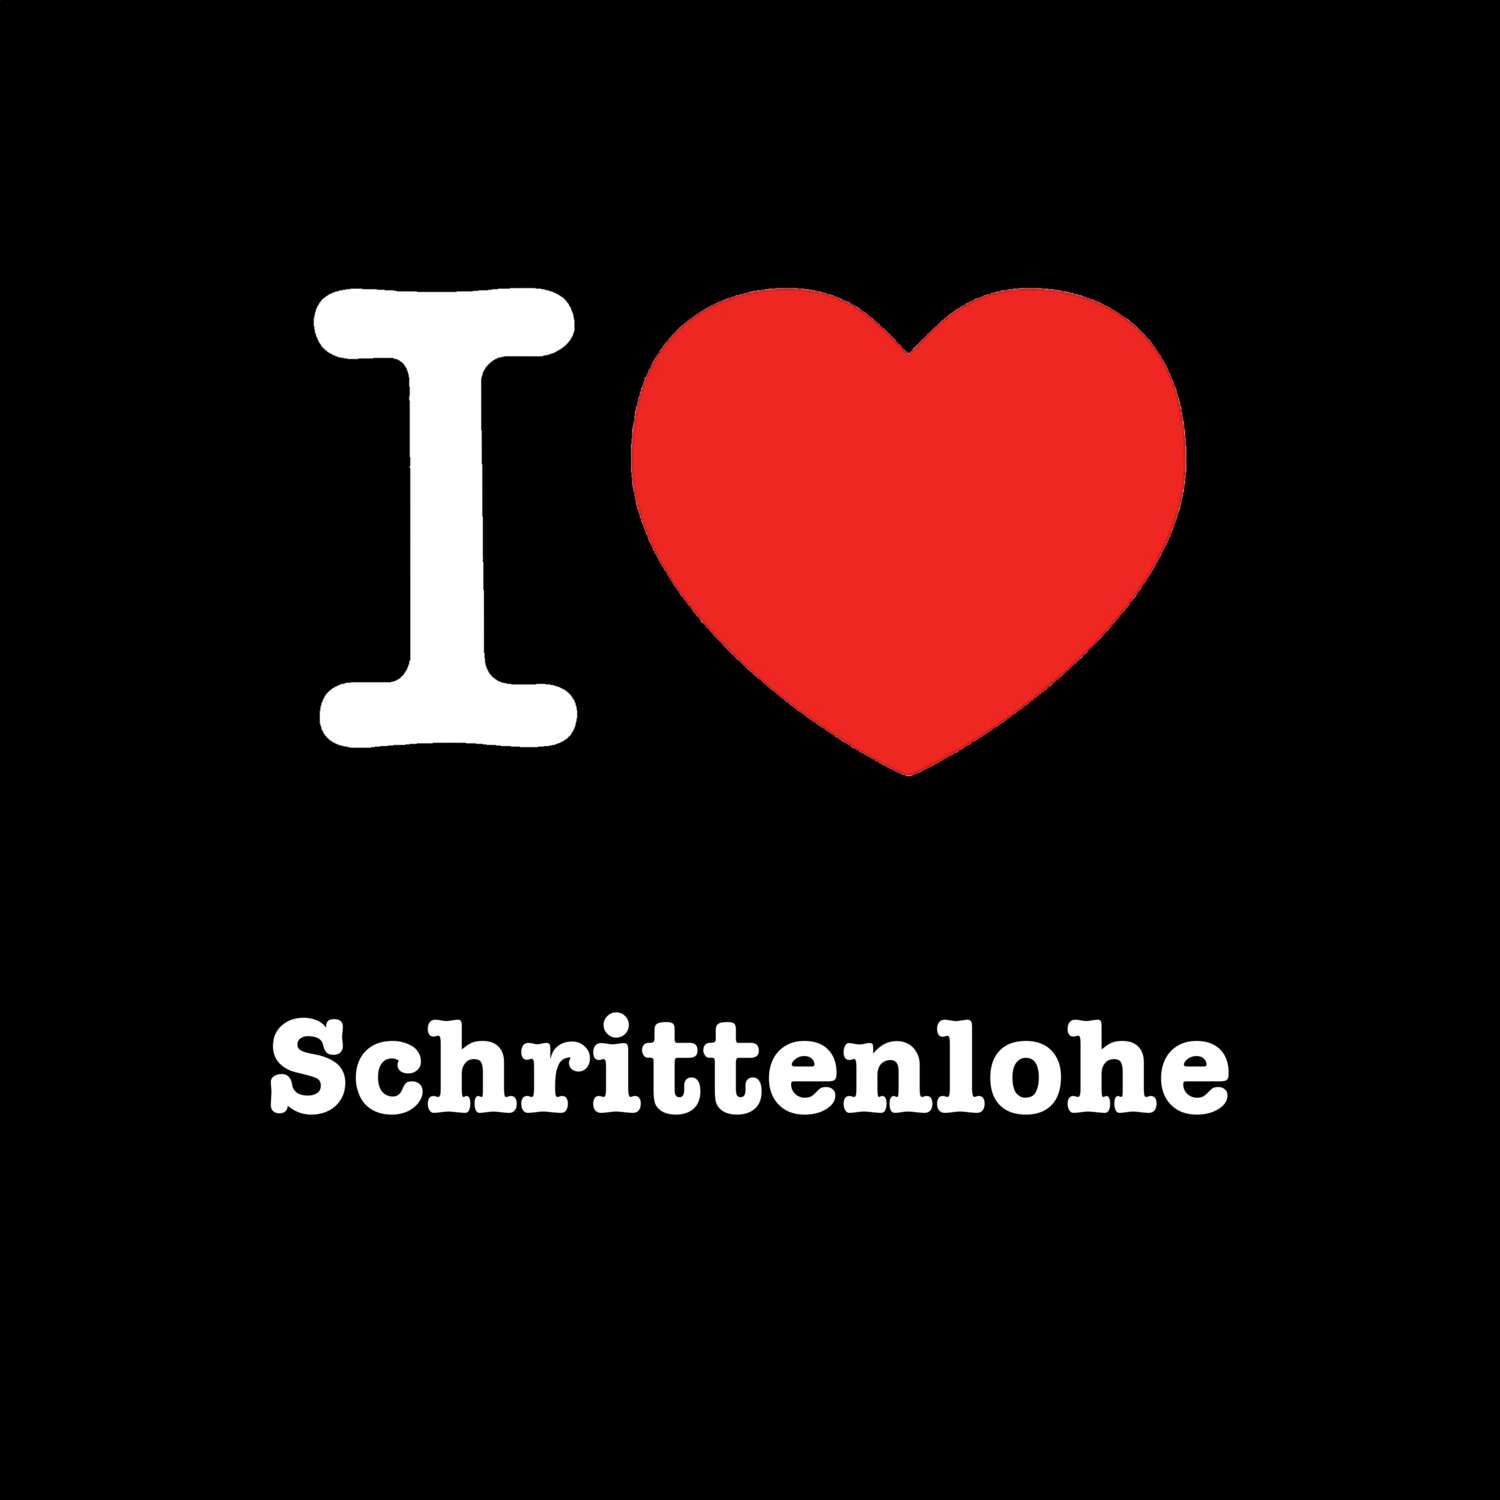 Schrittenlohe T-Shirt »I love«